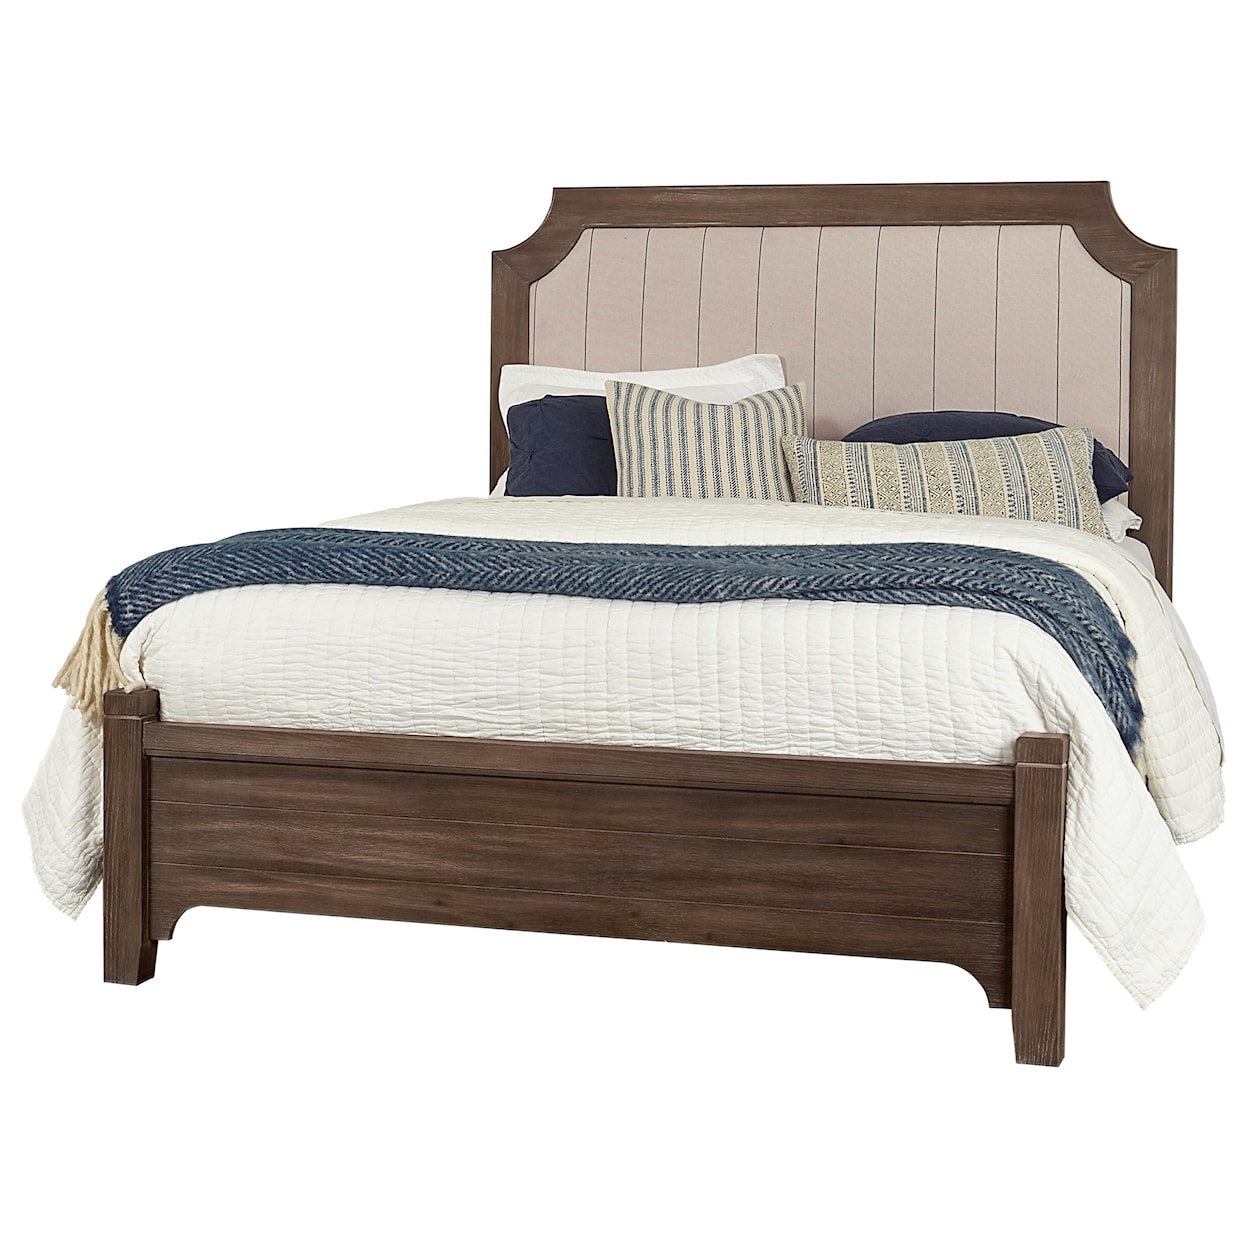 Laurel Mercantile Co. Bungalow Upholstered Queen Bed